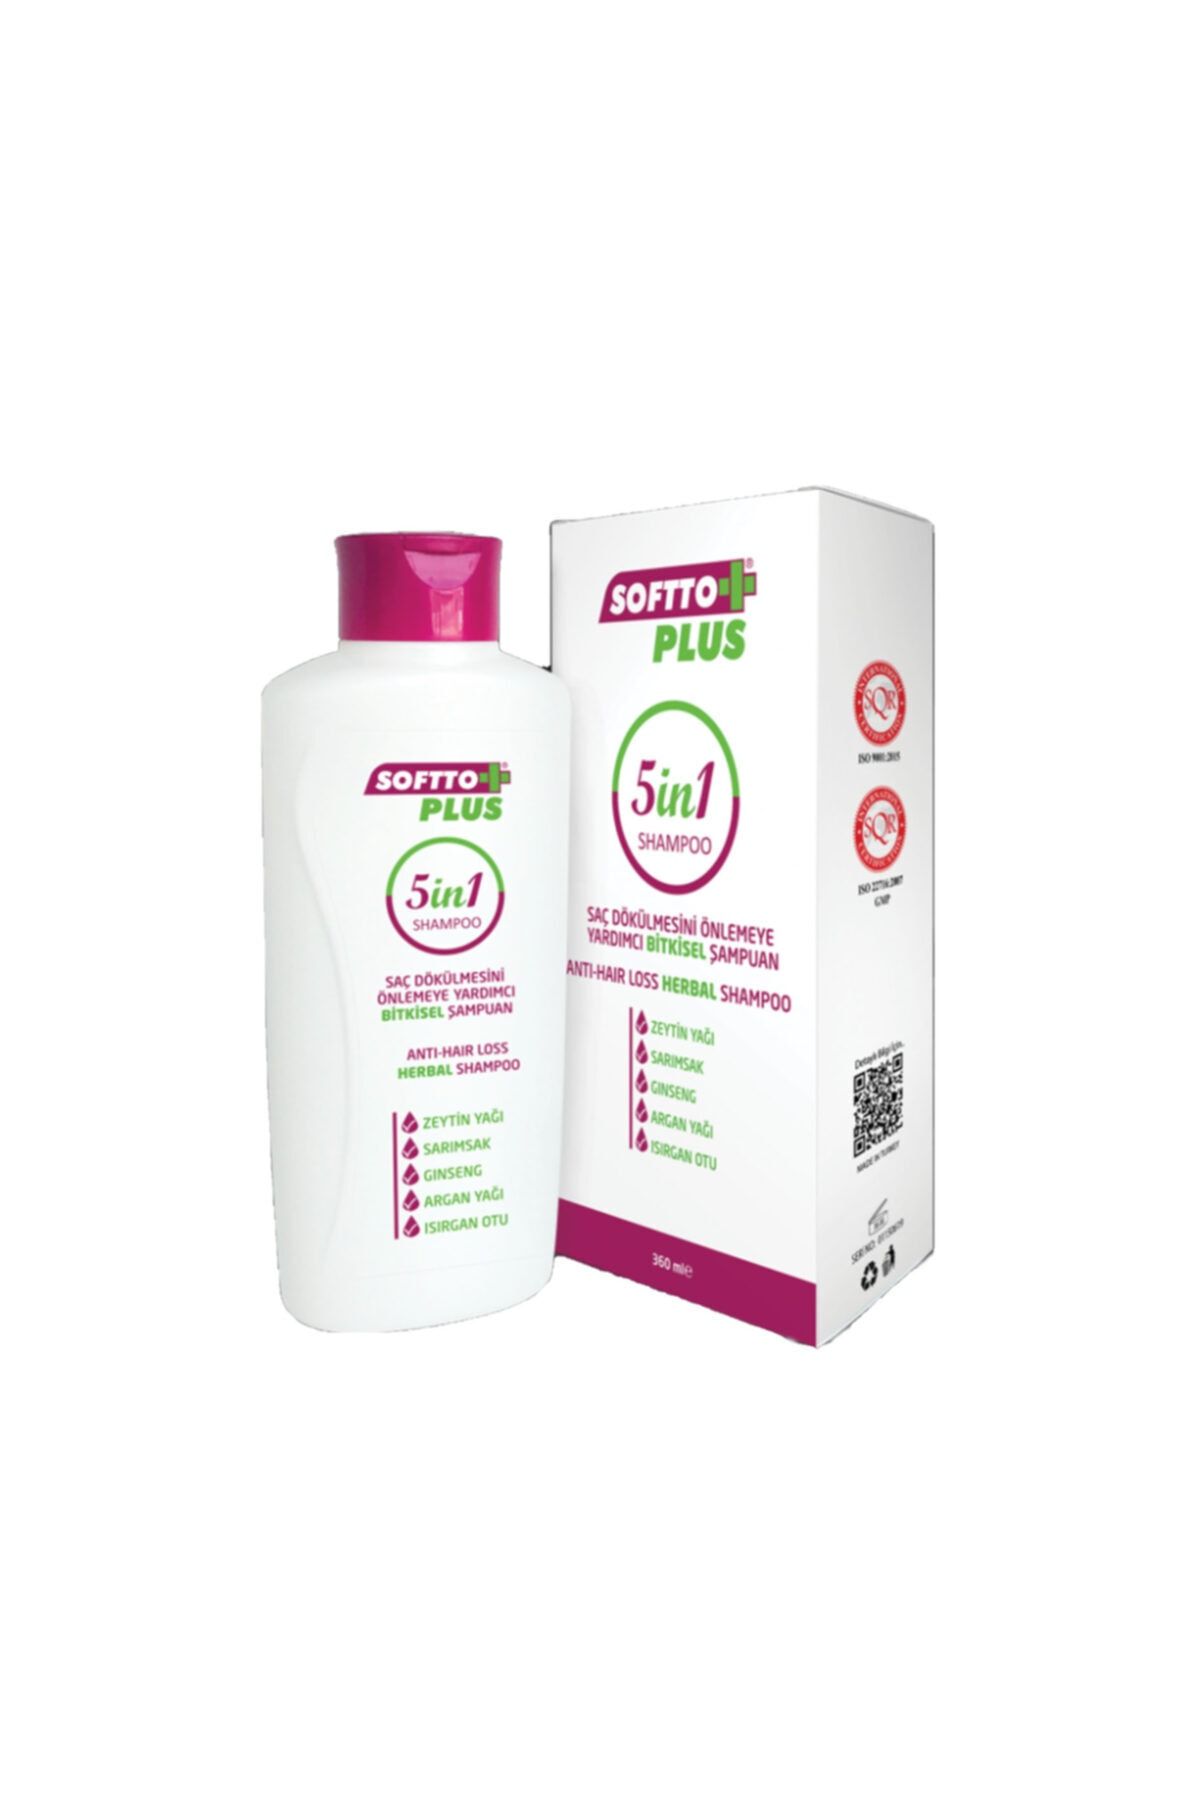 Softo Plus Saç Dökülmesini Önlemeye Yardımcı Bitkisel Şampuan 5 in 1